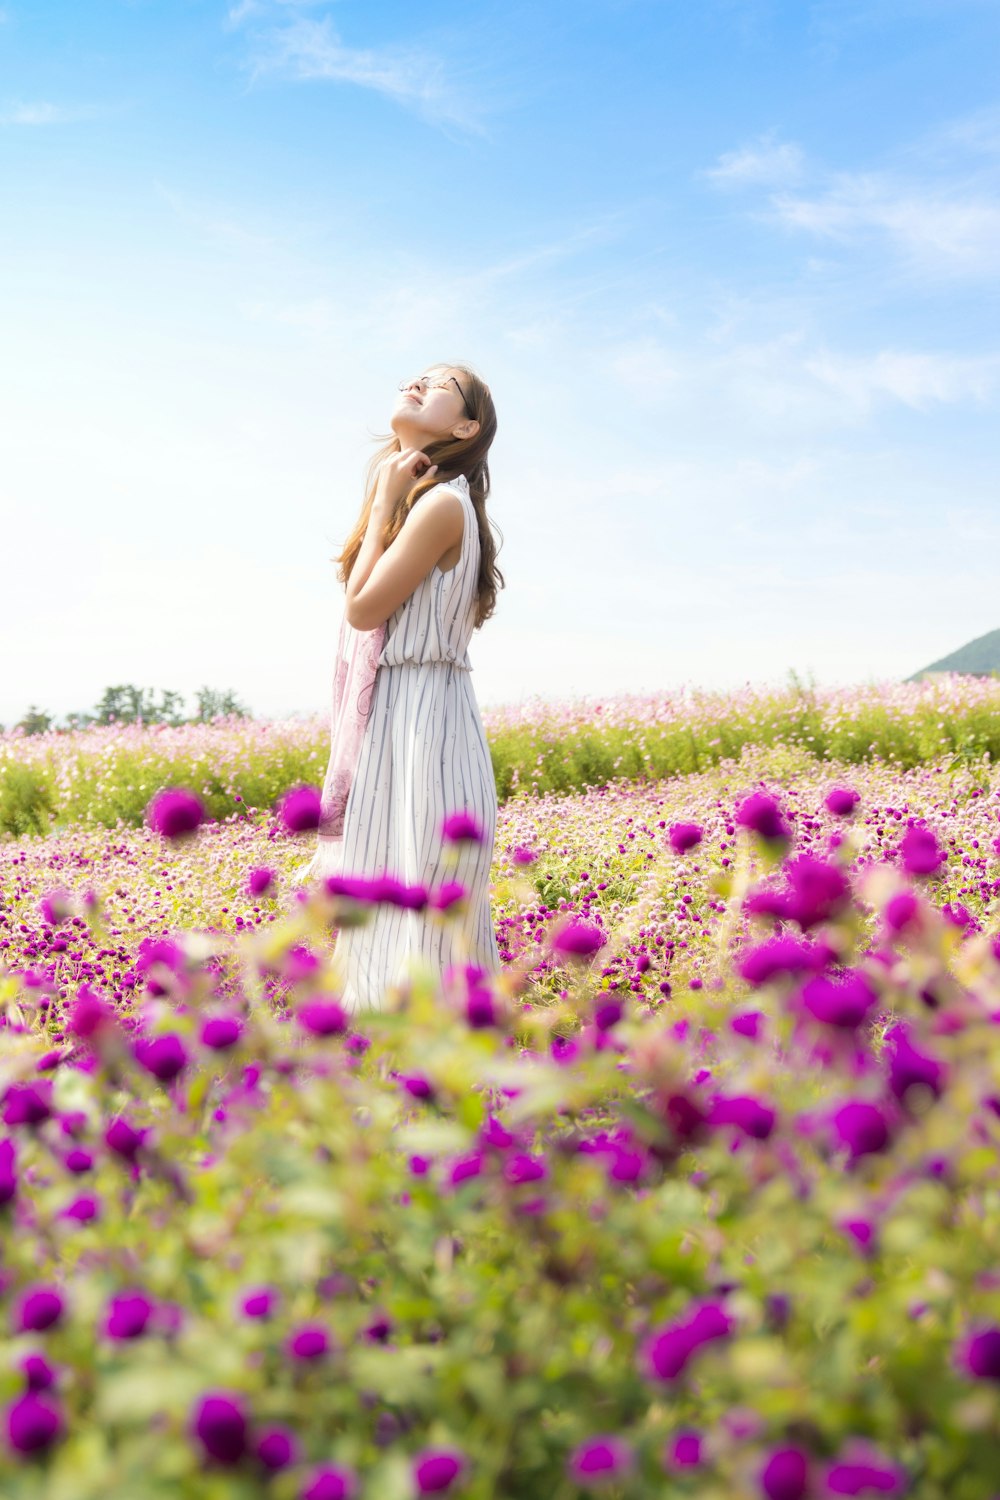 Frau trägt weiß-grau gestreiftes ärmelloses Kleid und riecht die Luft, die tagsüber im rosa Blumenfeld steht